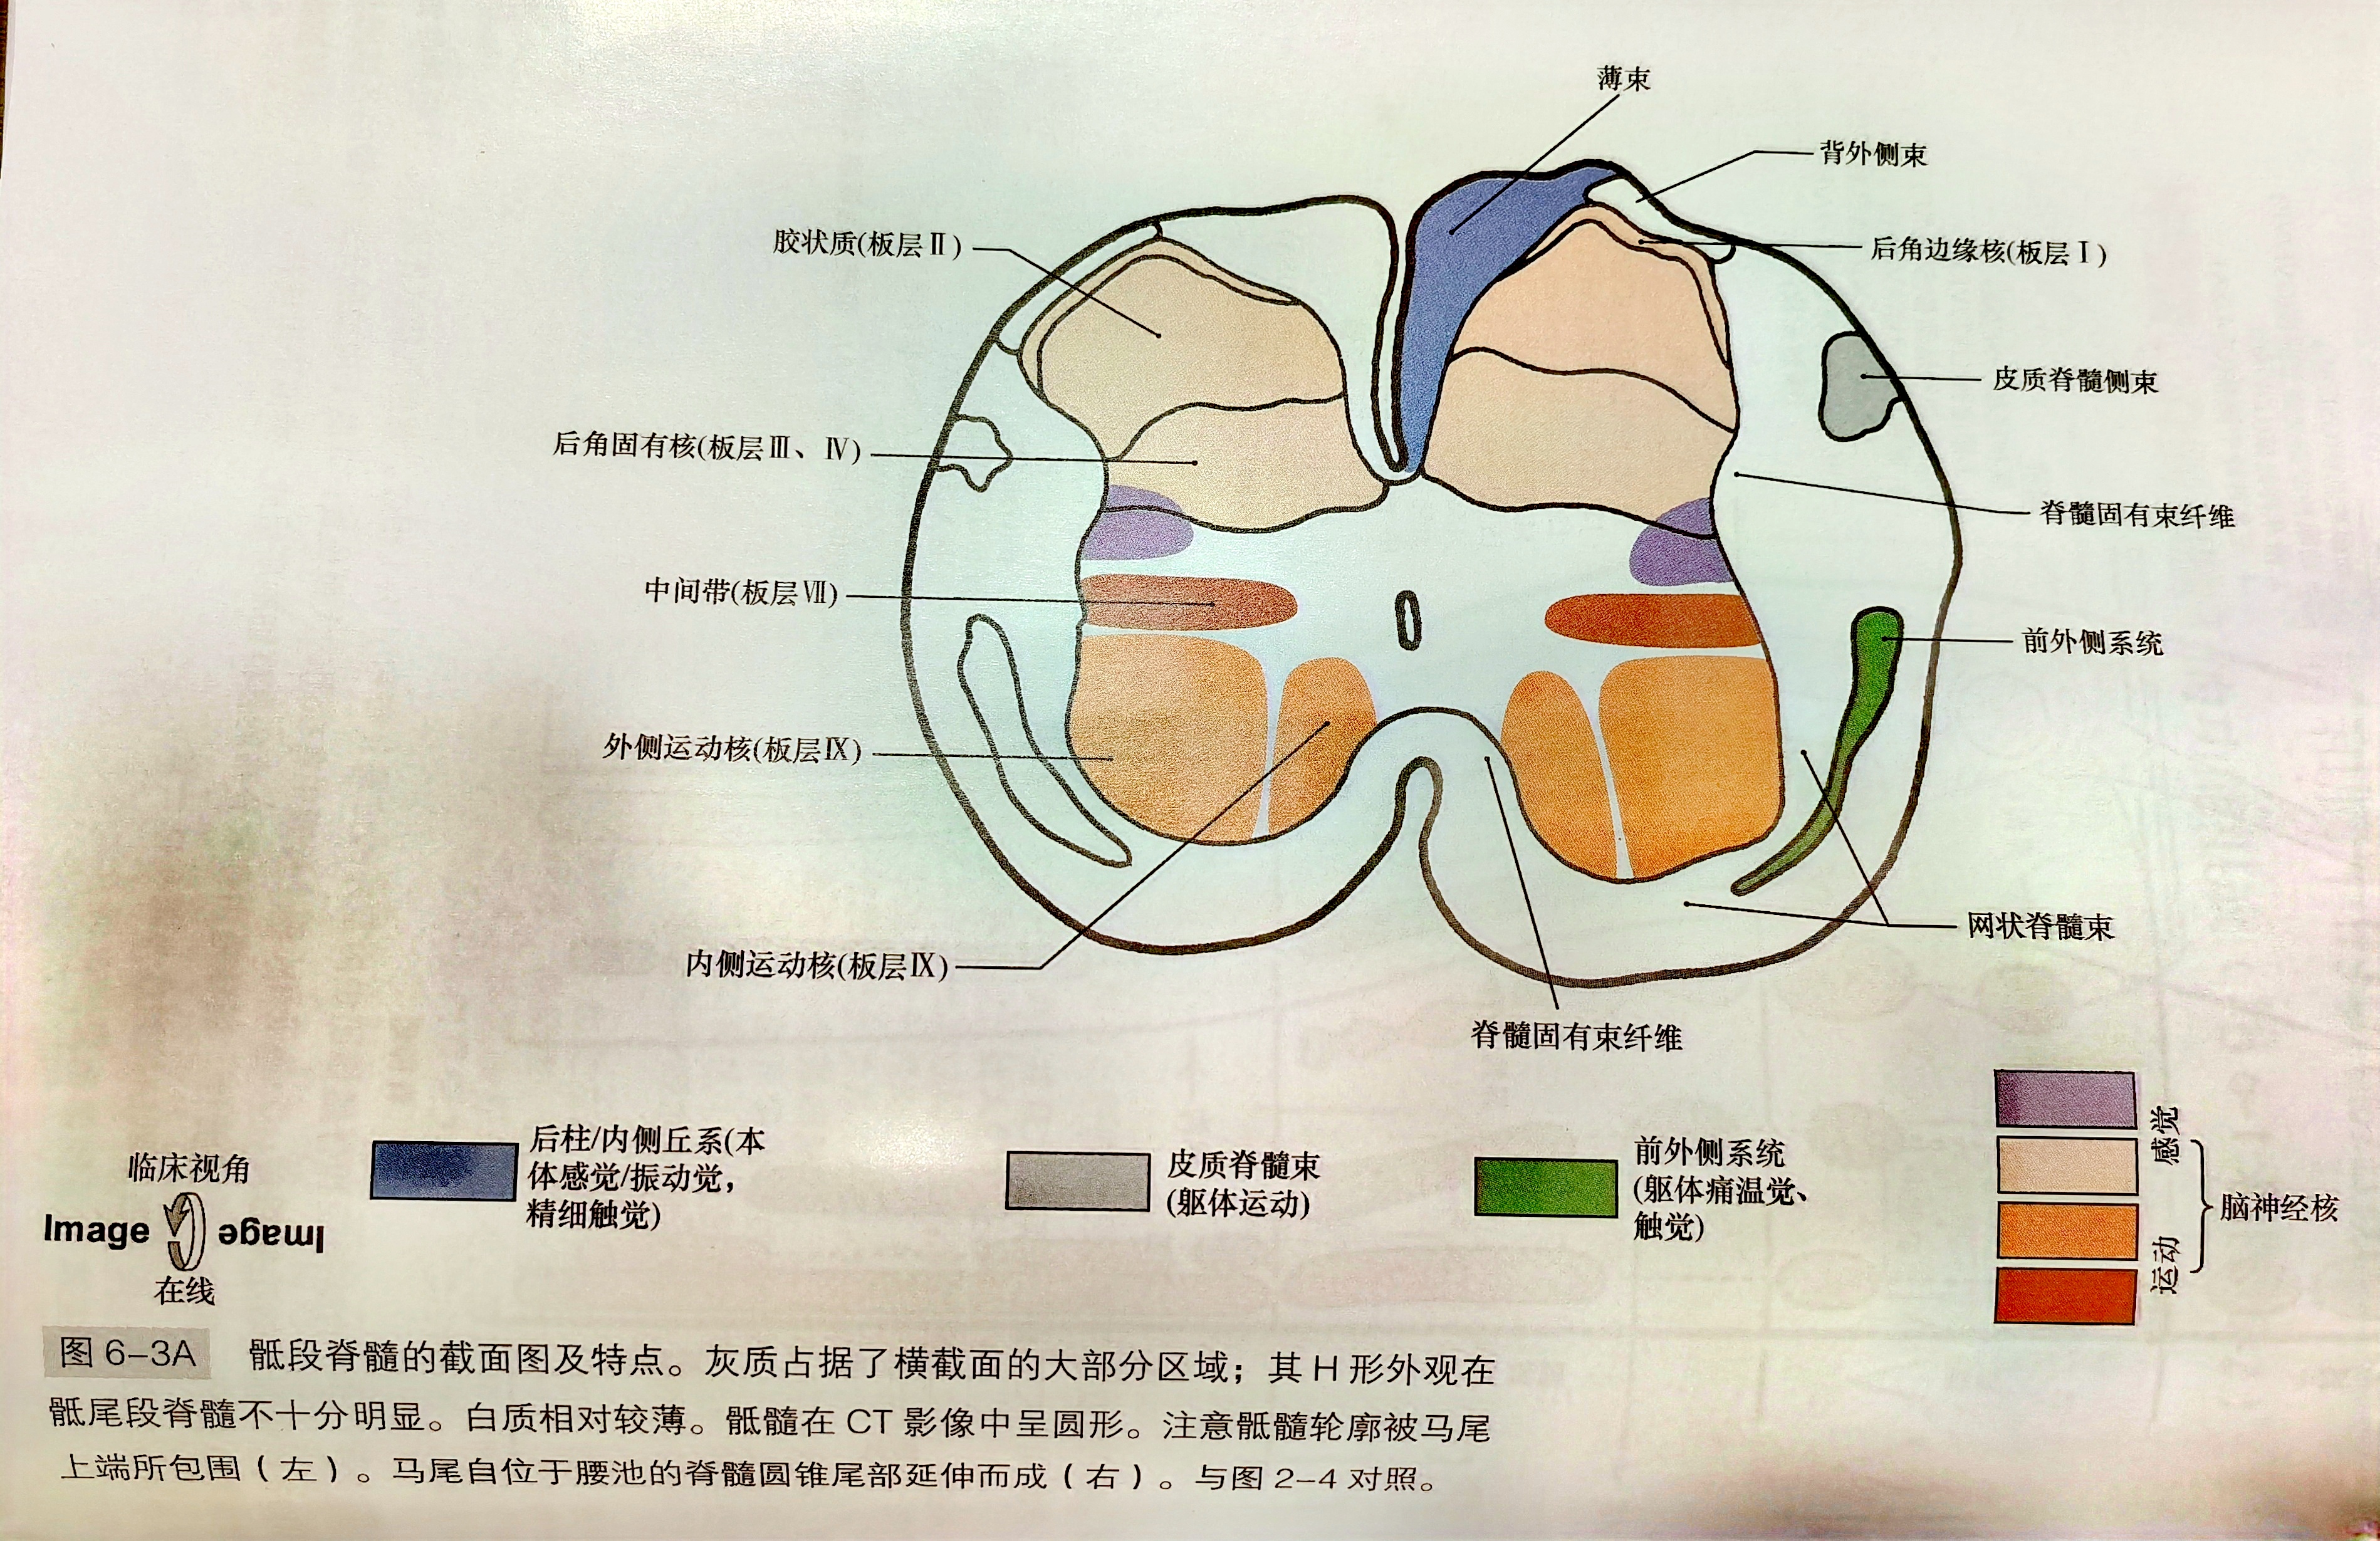 脊髓结构及CT和<font color="red">MRI</font>表现